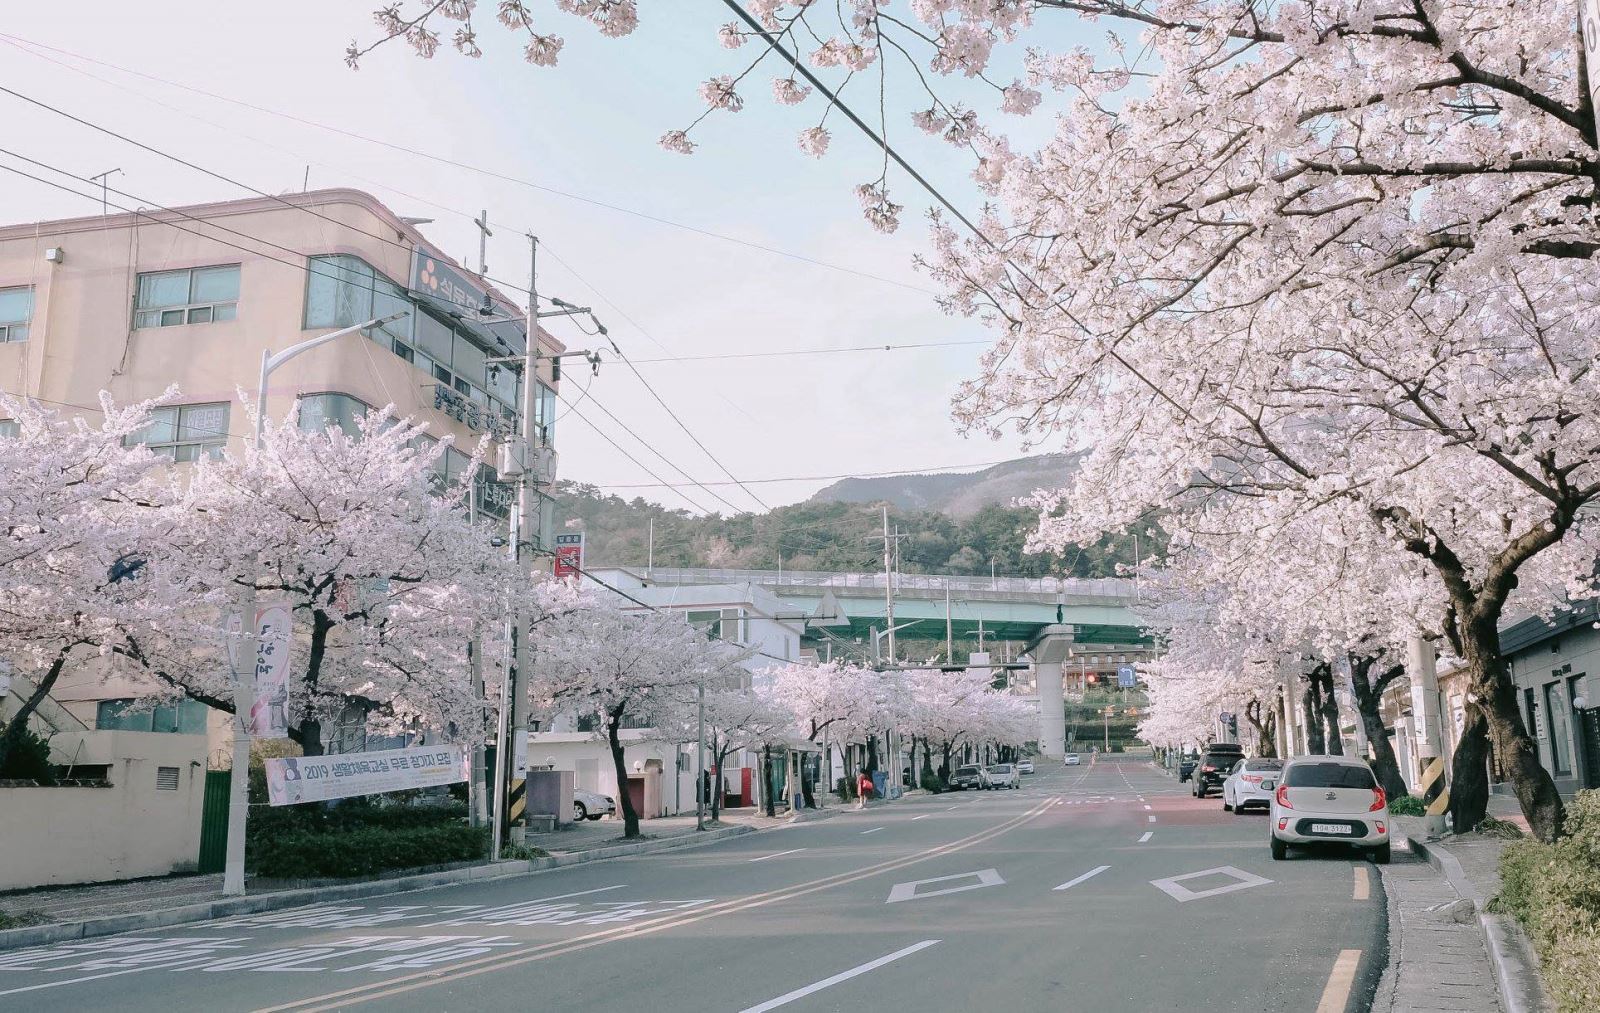 Jinhae là nơi có nhiều hoa anh đào nhất ở Hàn Quốc, với khoảng 400.000 cây